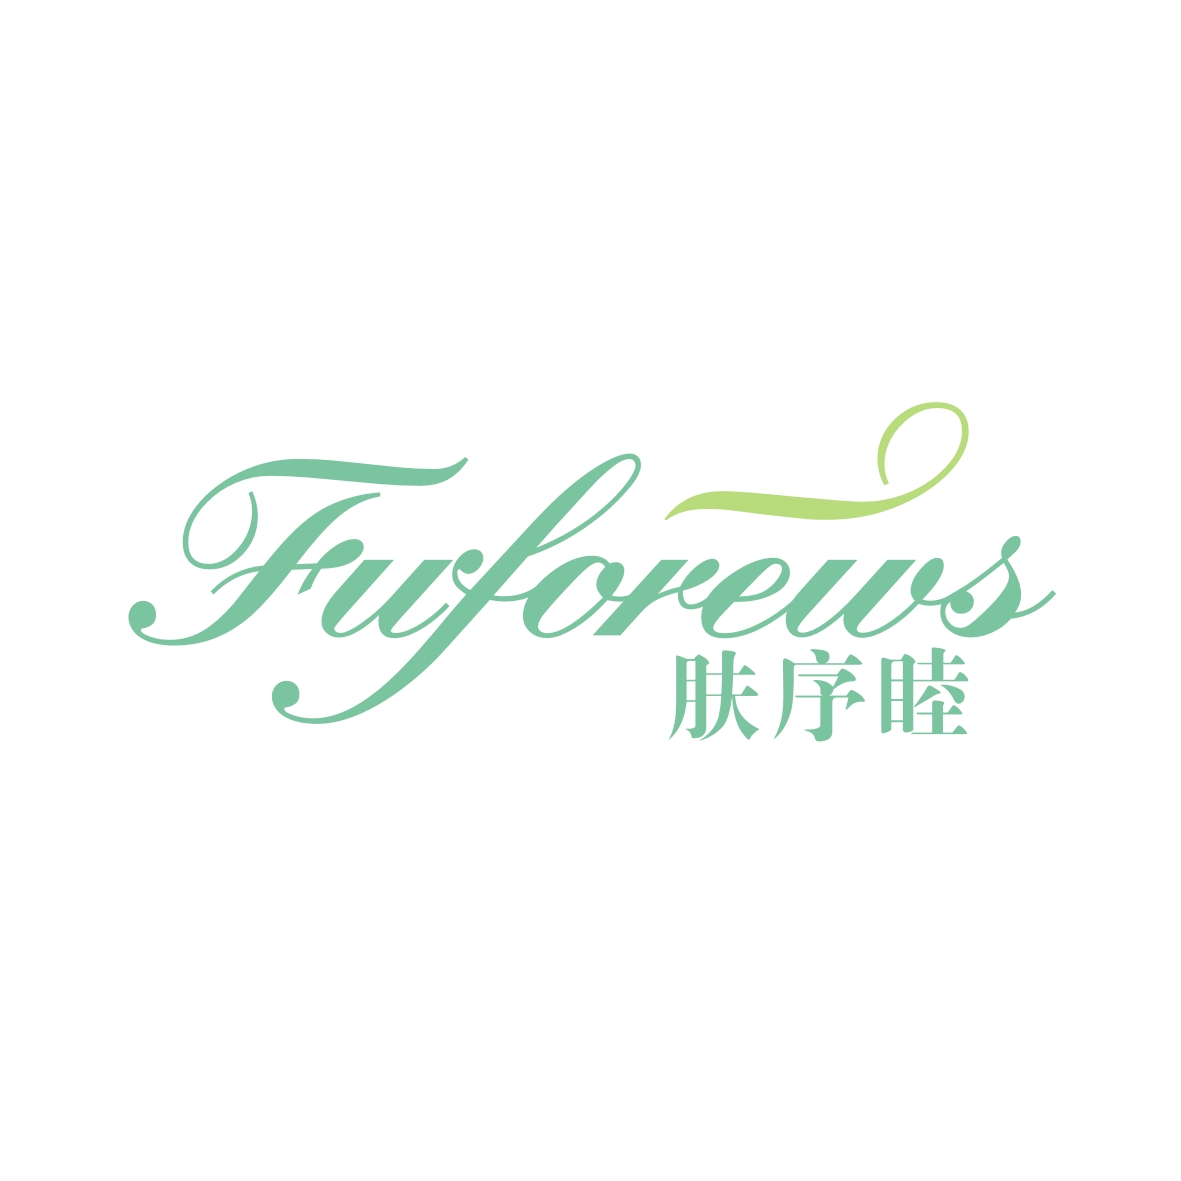 广州市龙曦生物科技有限公司商标肤序睦 FUFOREWS（03类）多少钱？